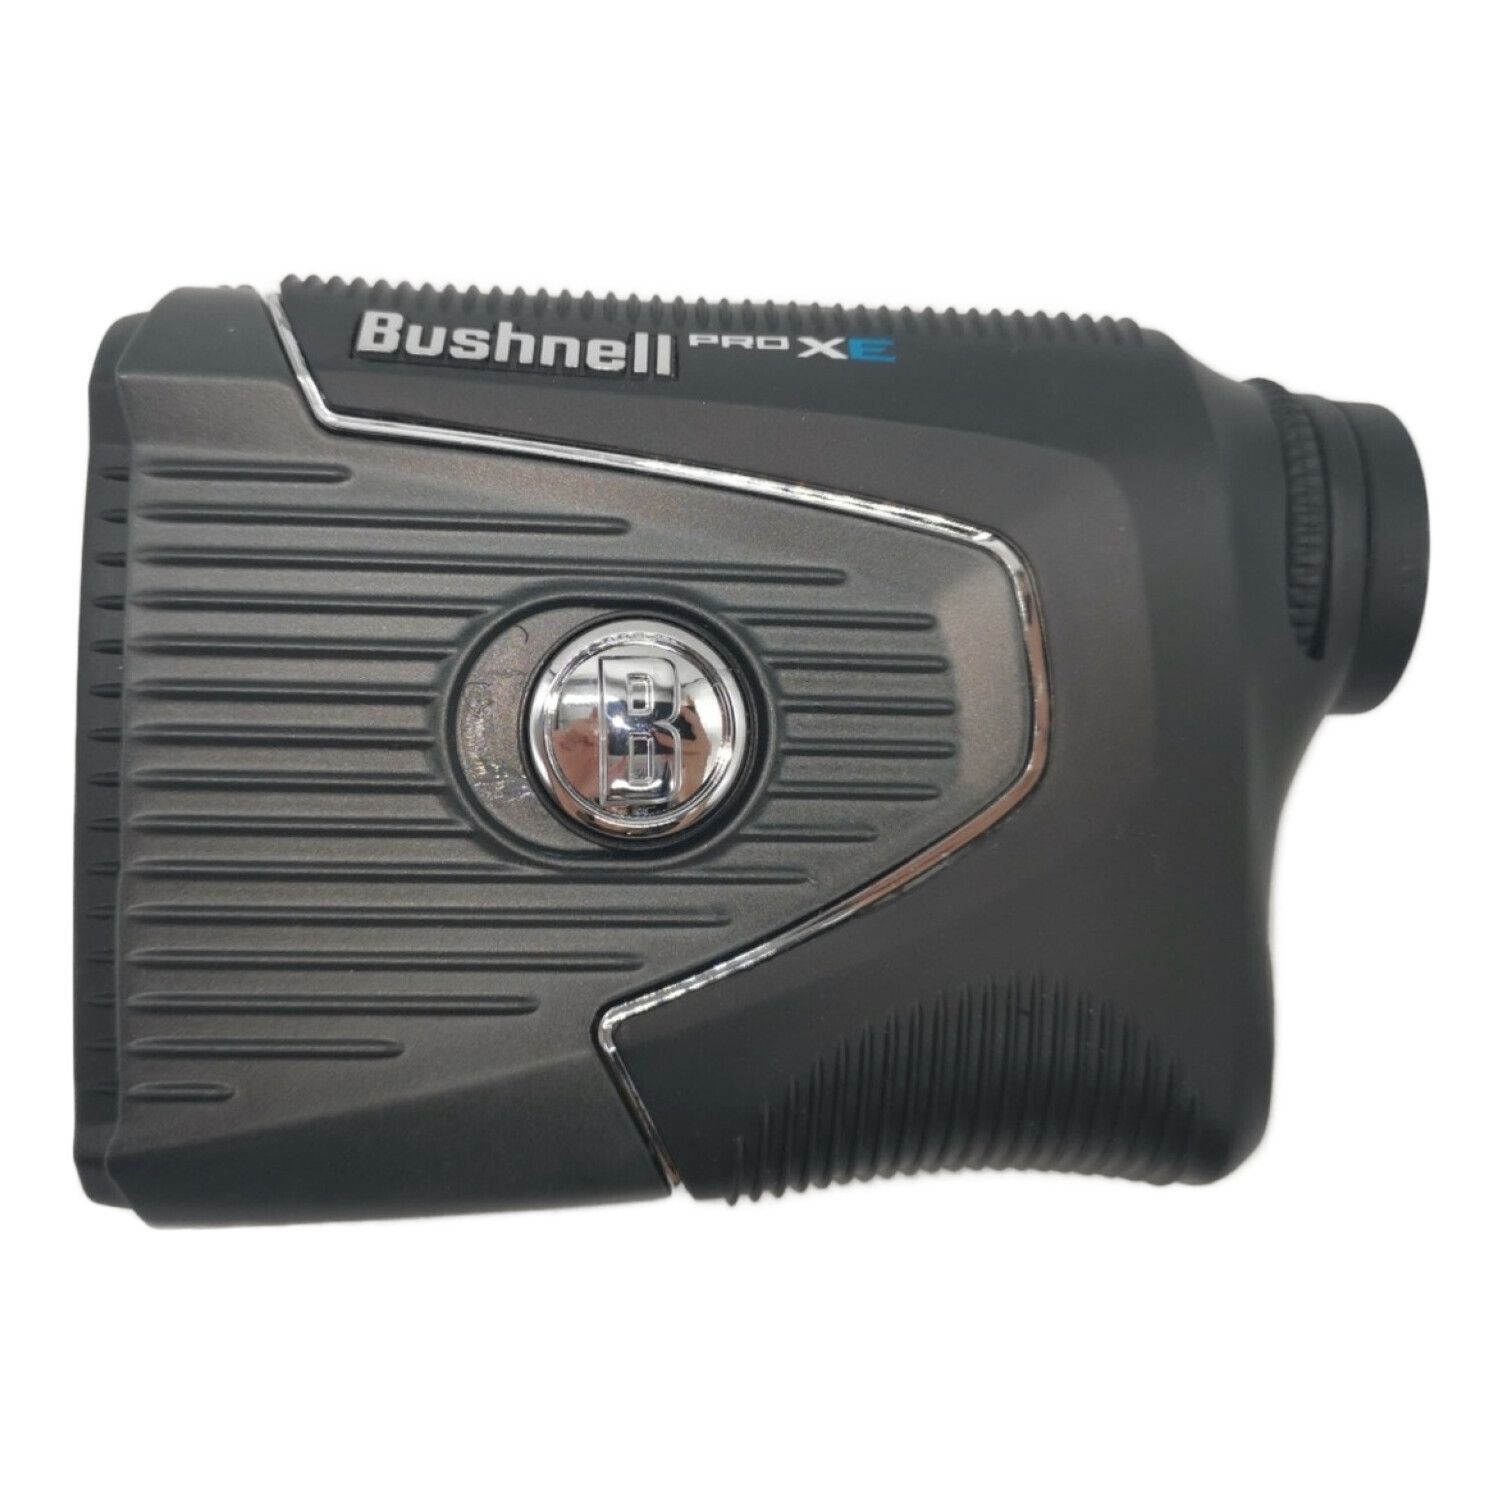 Bushnell (ブッシュネル) ゴルフ用レーザー距離計 箱・説明書付 ピン 